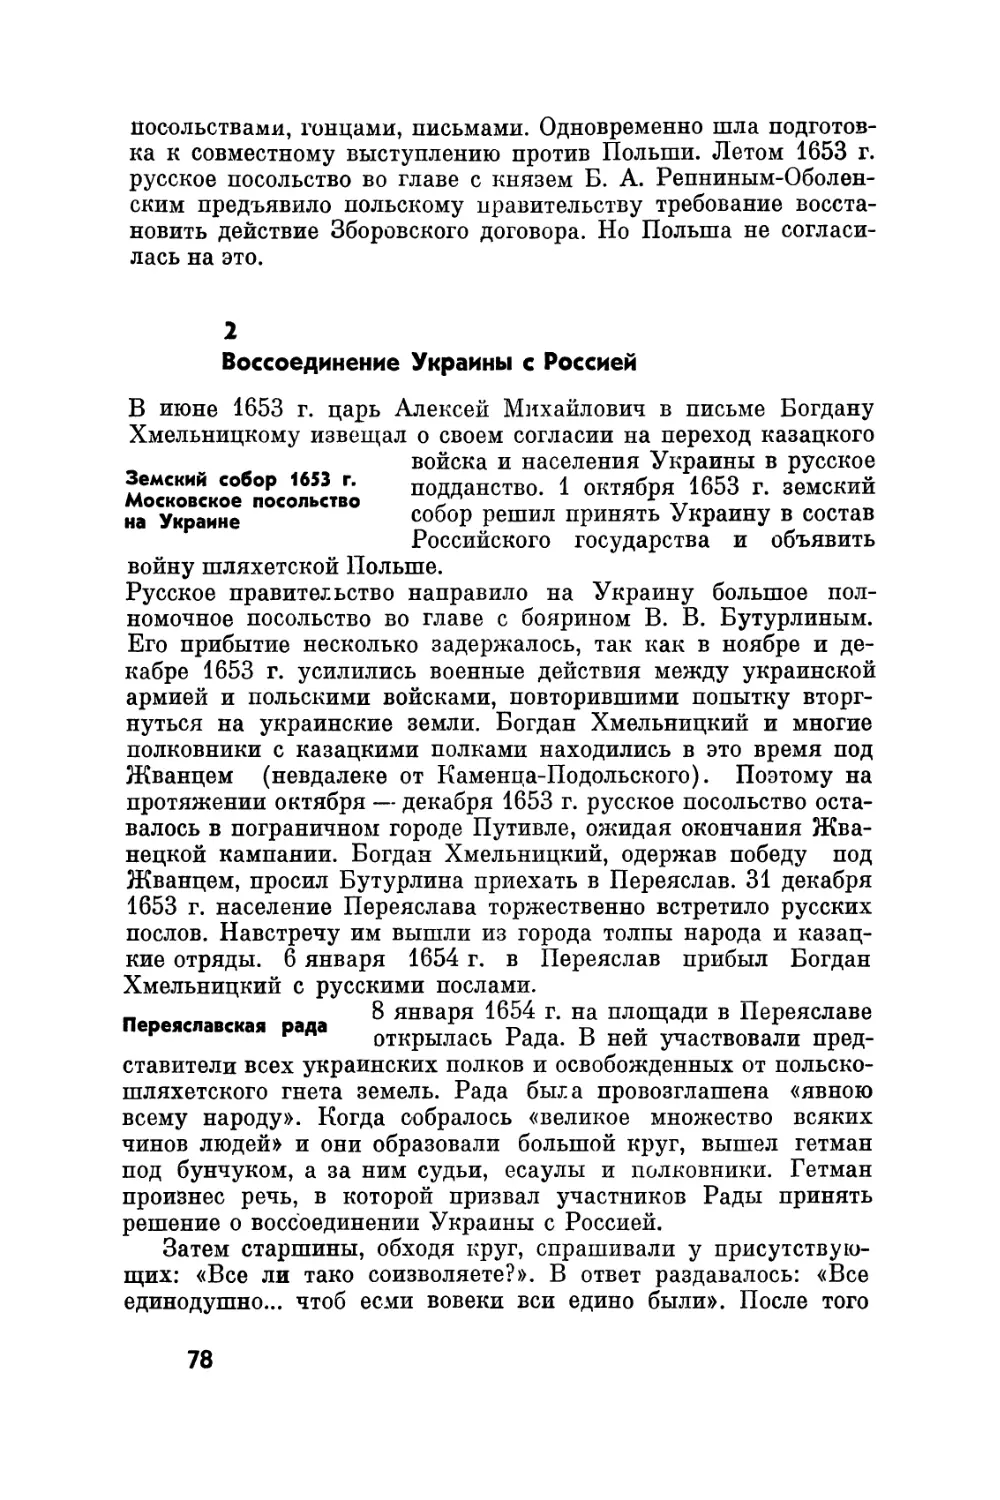 2. Воссоединение Украины с Россией
Переяславская рада